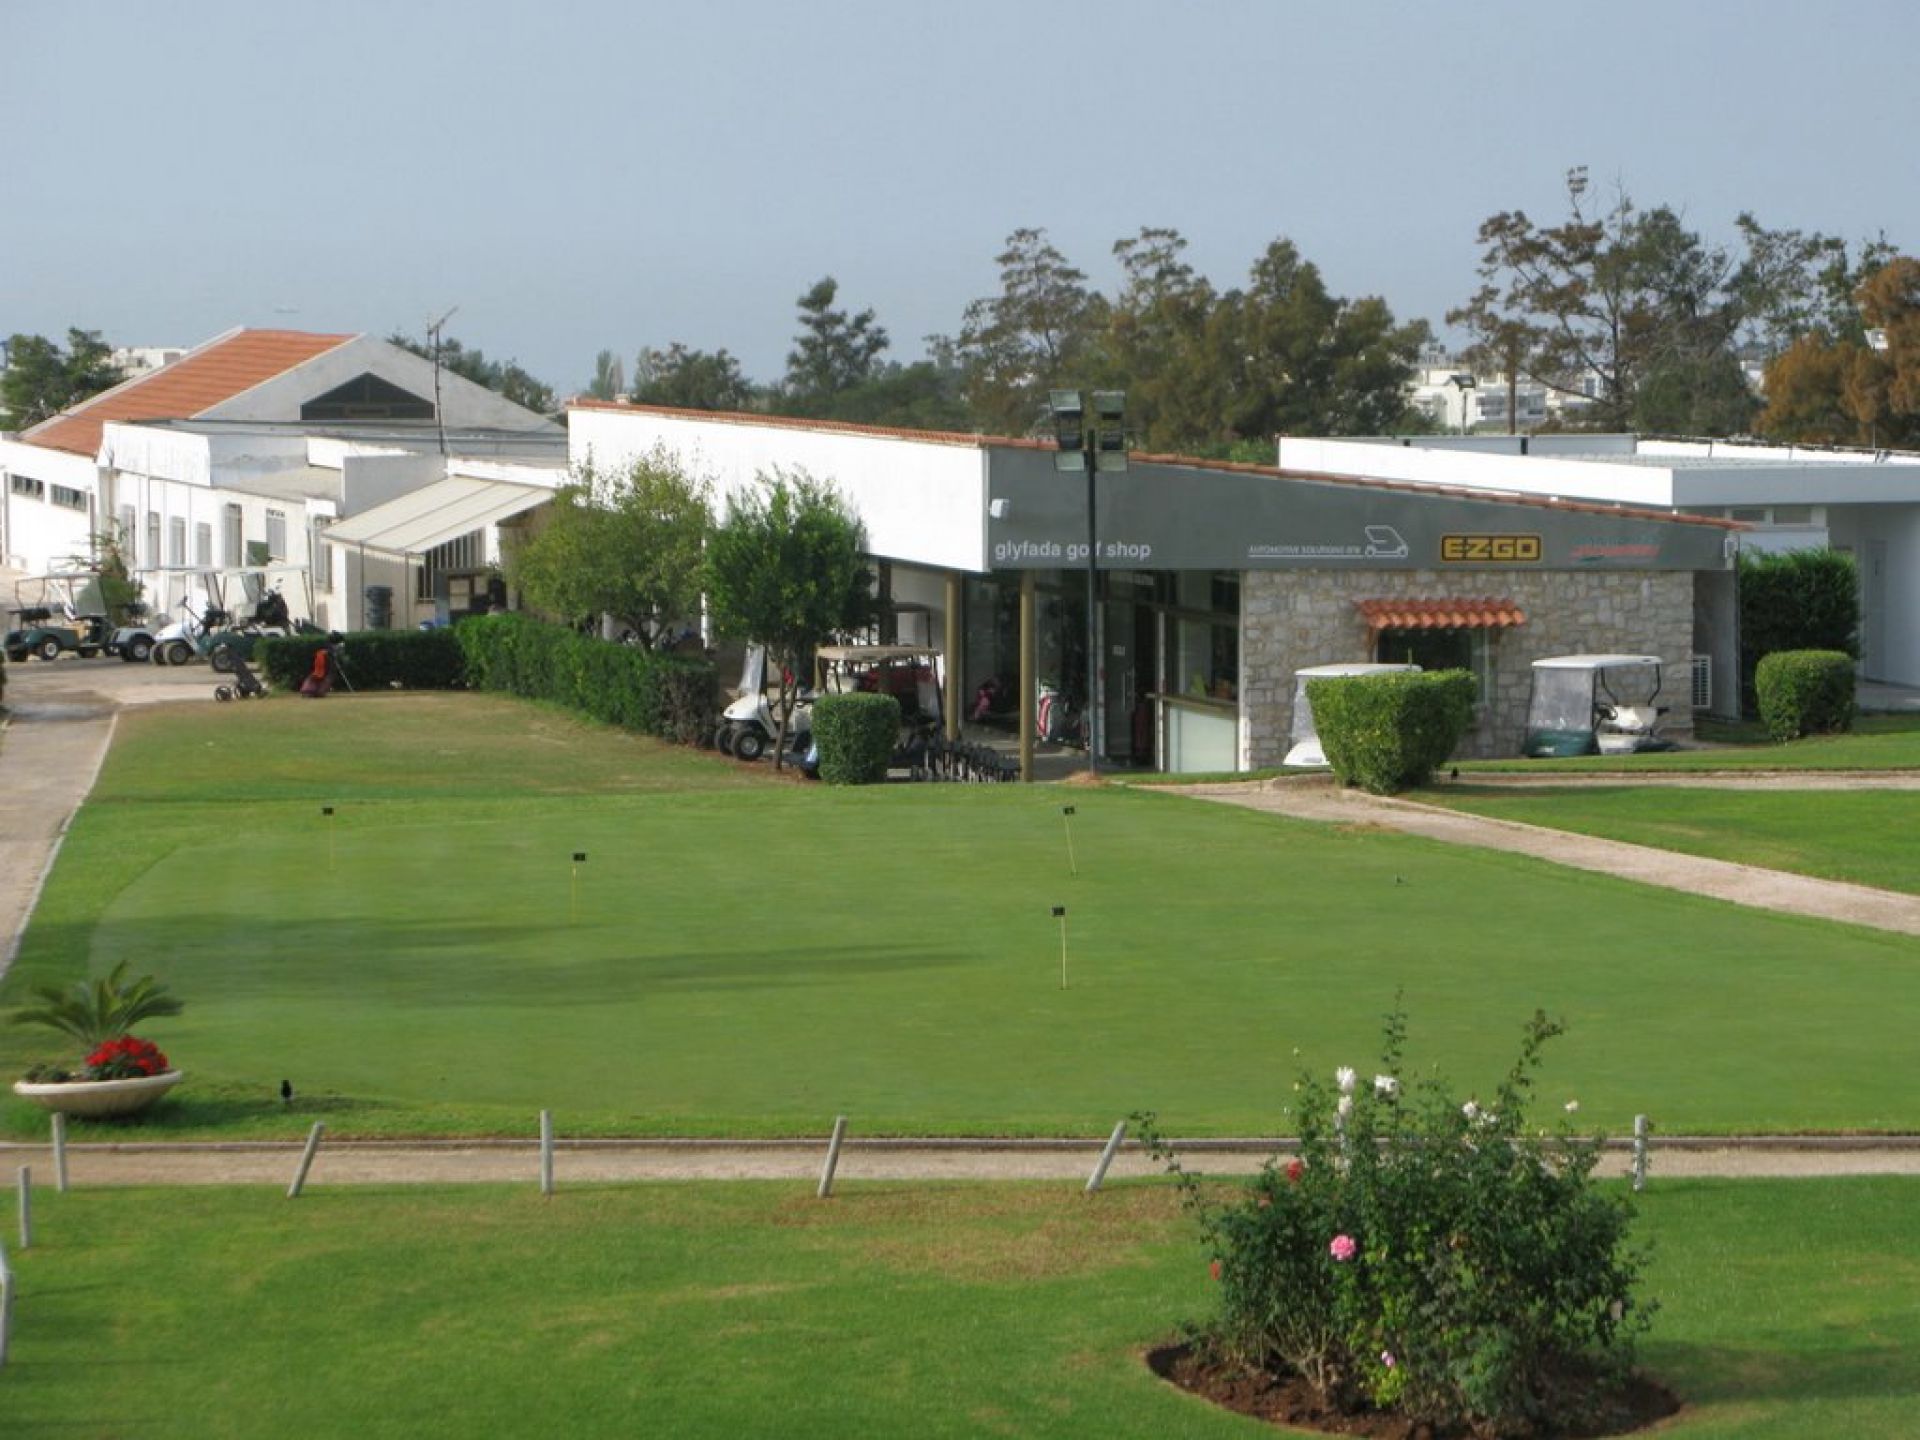 Glyfada Golf Gardens